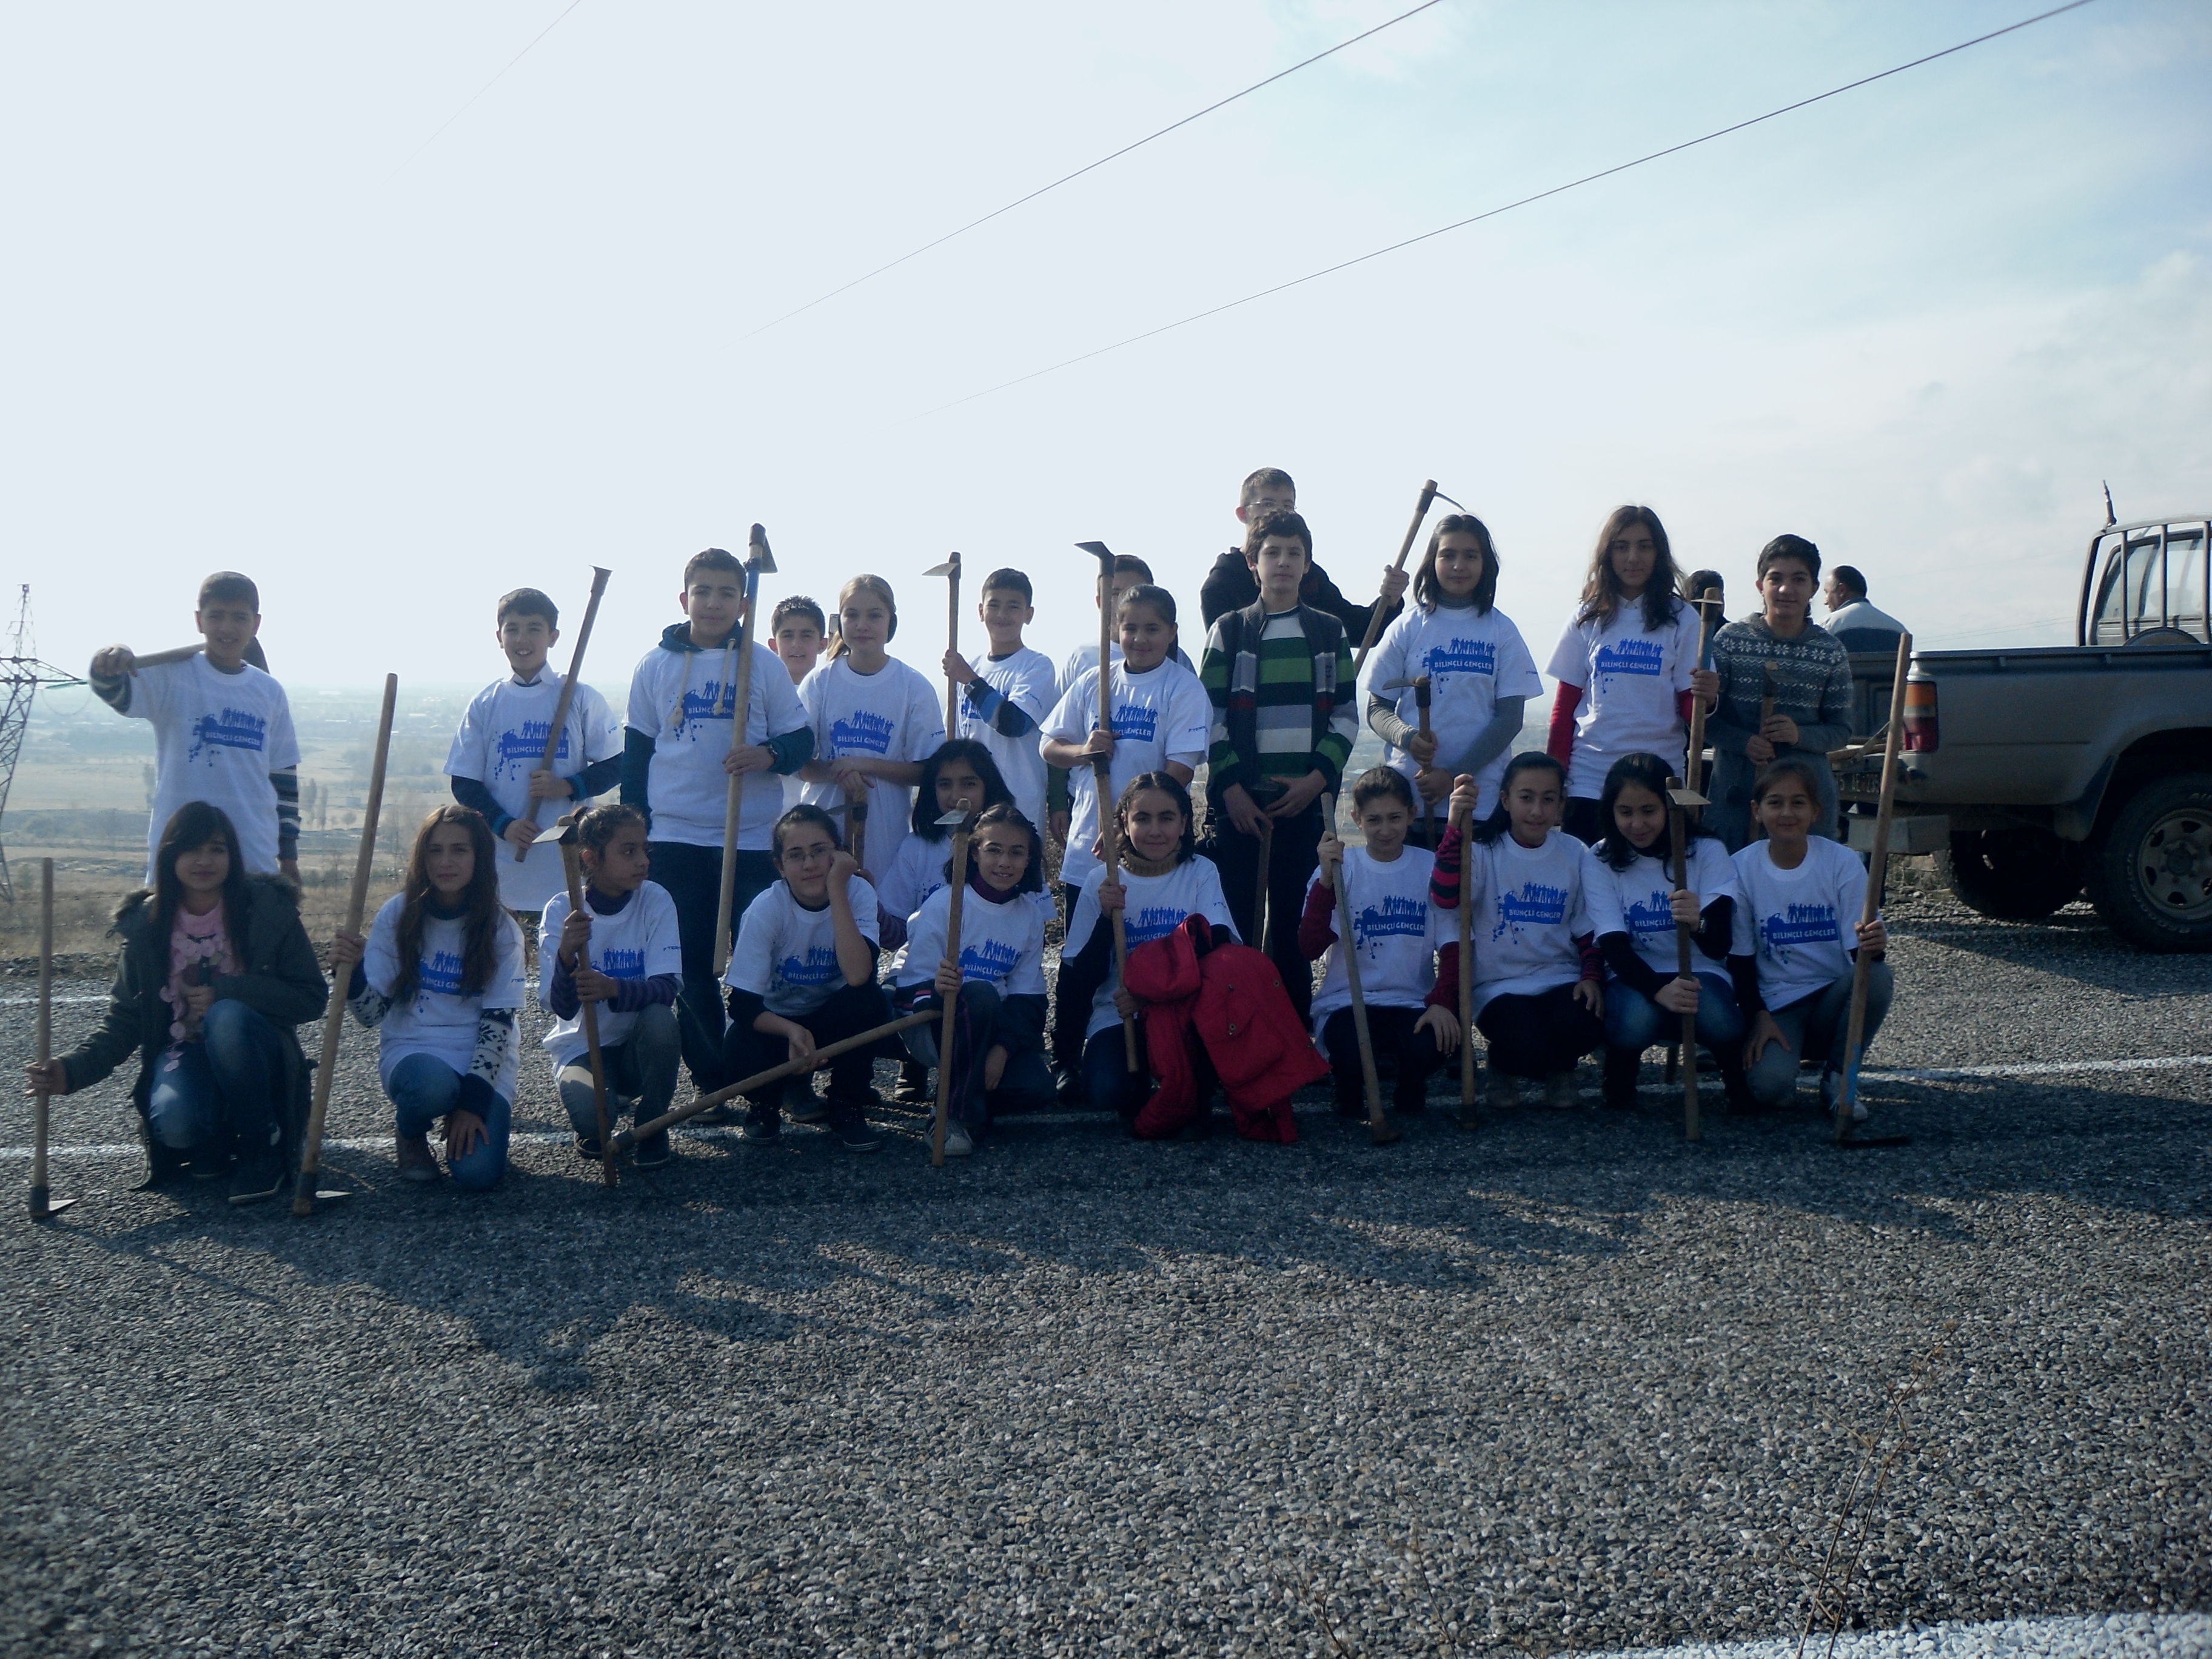 Bilinçli Gençler Derneği - Türkiye Bilinçli Gençlik Projesi - "BENİM DE DİKİLİ BİR AĞACIM OLACAK" - Ziya Gökalp İlköğretim Okulu - ERZİNCAN